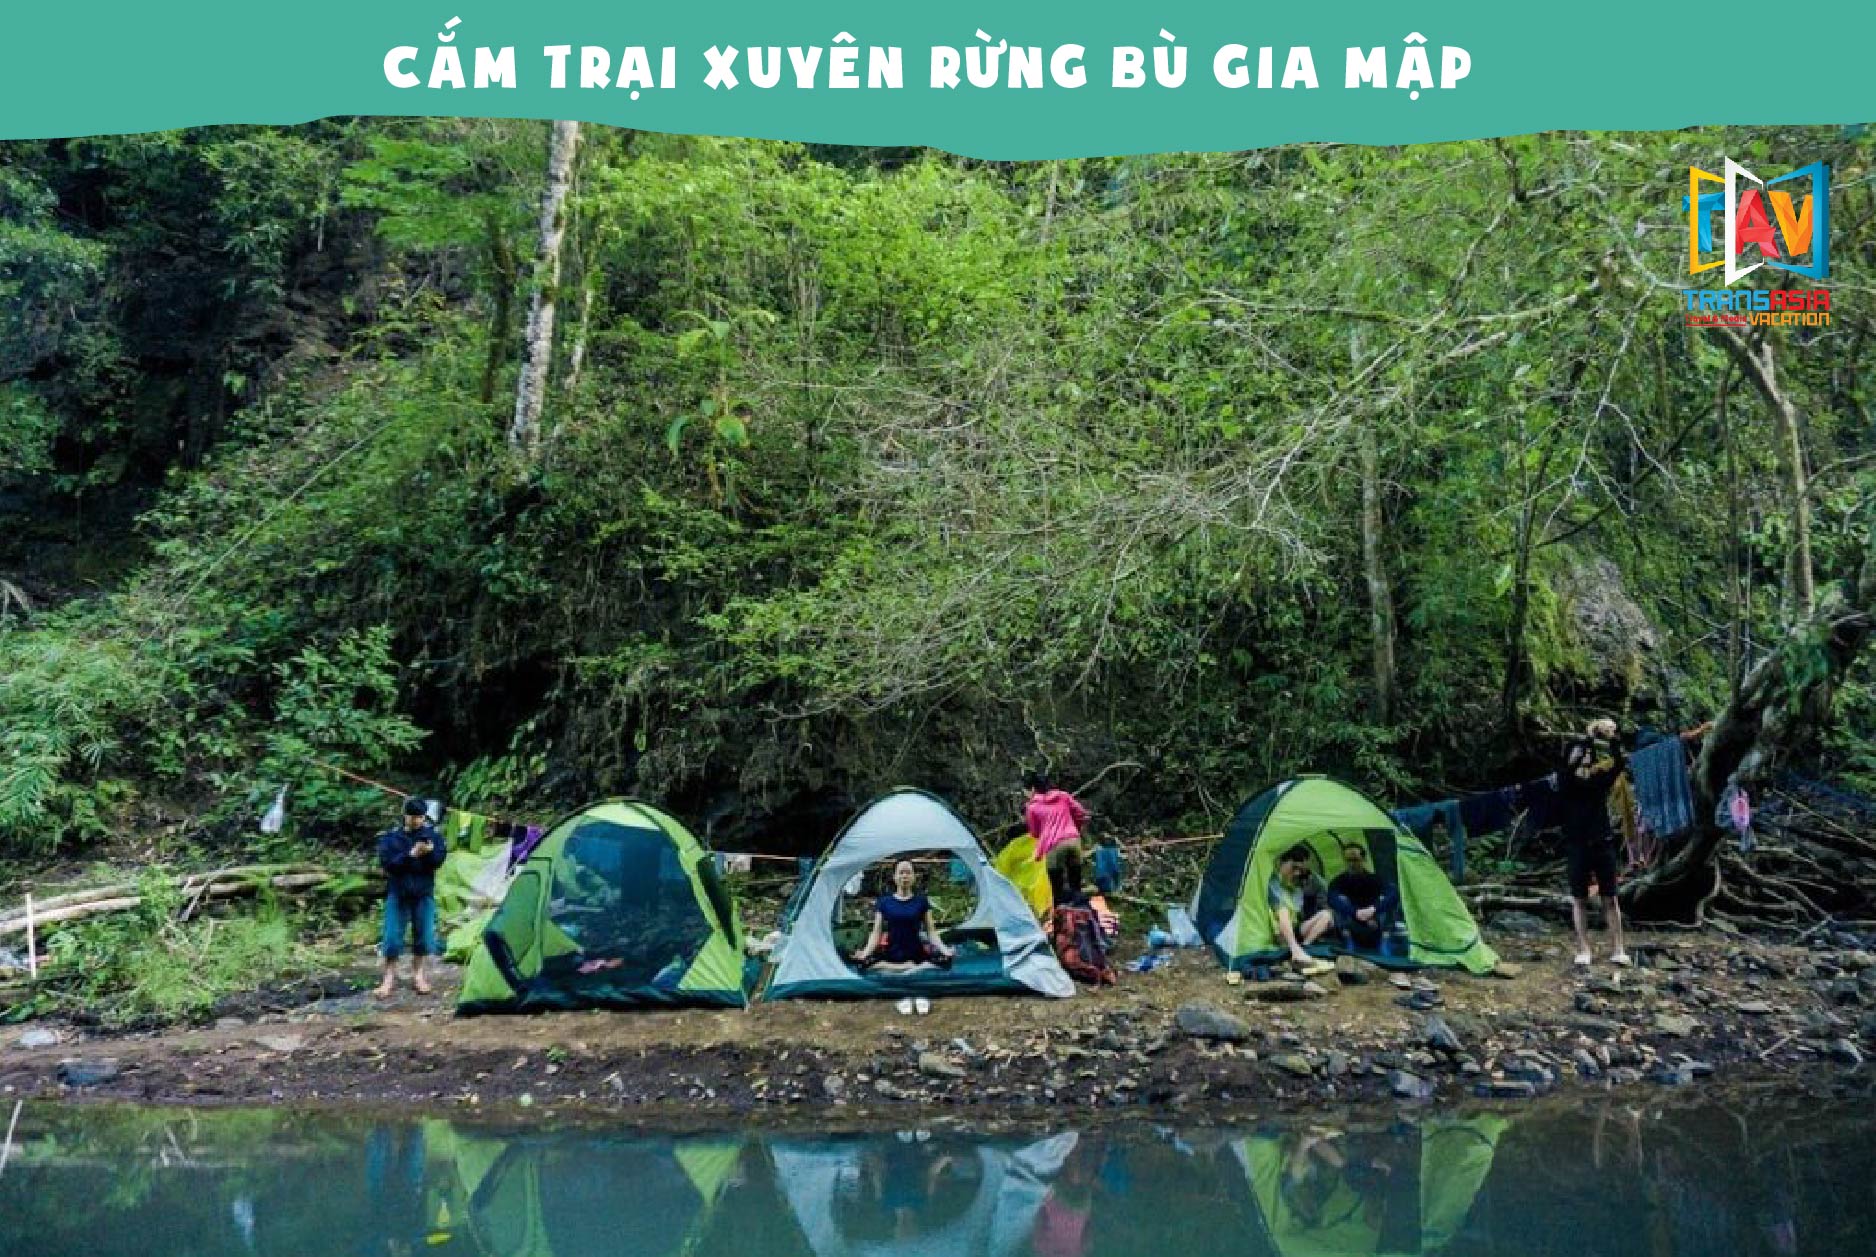 Suối Dak Ka - Tour du lịch trekking Bù Gia Mập, thứ 7 hàng tuần chỉ 1tr890 - TAV TRAVEL